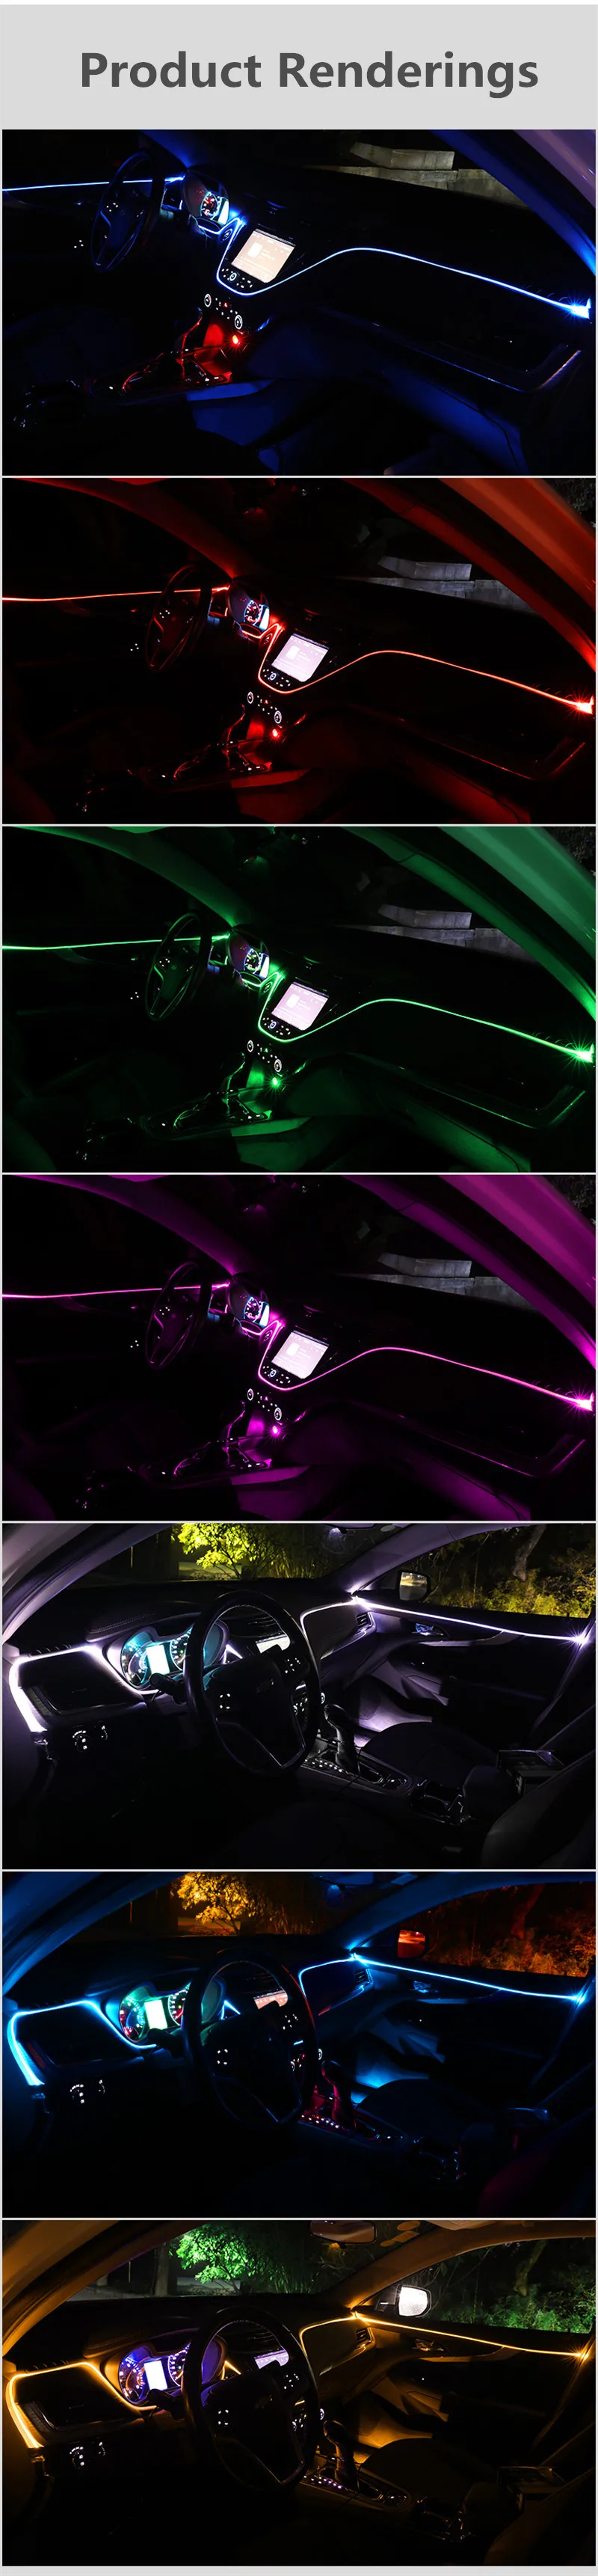 6-10 м RGB волоконно-оптический Атмосфера лампы салона автомобиля окружающей среды светильник декоративные настольные лампы для Audi A4 B6 B8 B7 A6 C5 C6 C7 A3 A5 Q3 Q5 Q7 TT